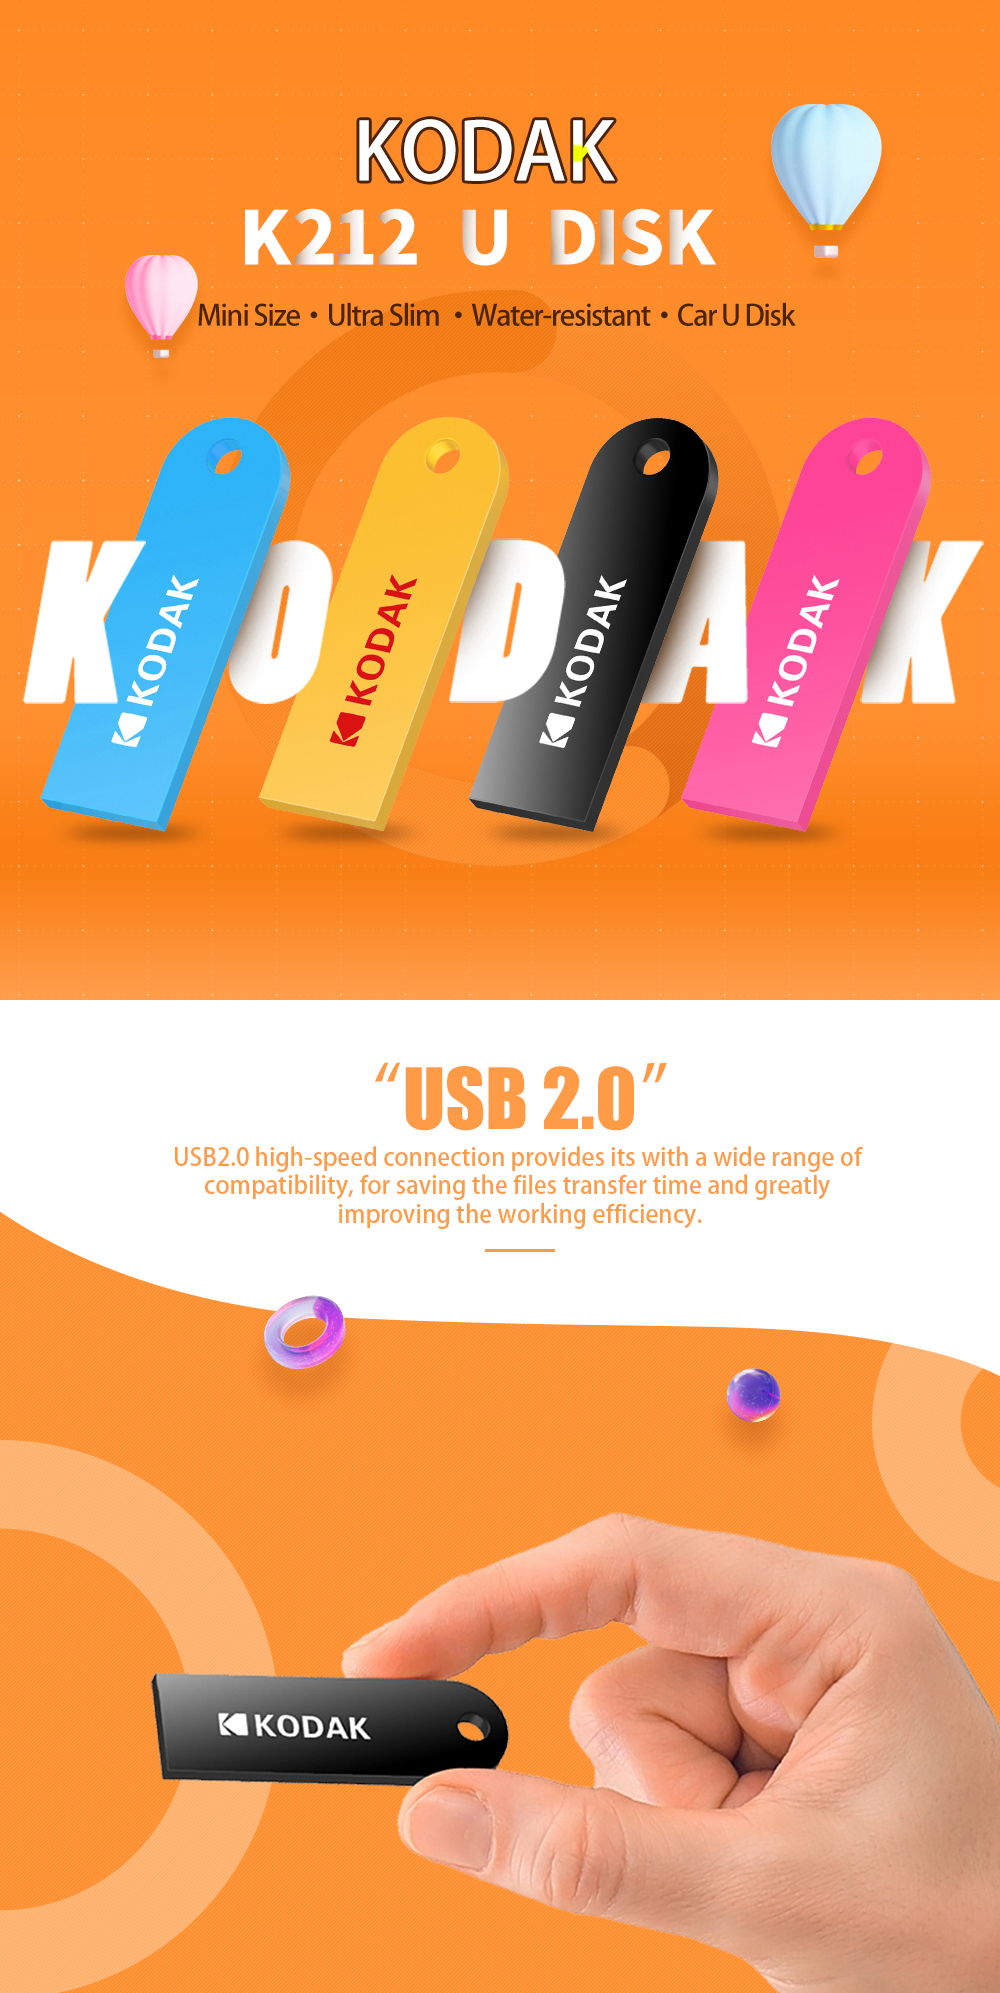 Kodak-K212-USB20-Small-USB-Flash-Drive-16GB-32GB-64GB-Memory-Stick-U-Disk-Pen-Drive-ABS-Colorful-Por-1566541-1